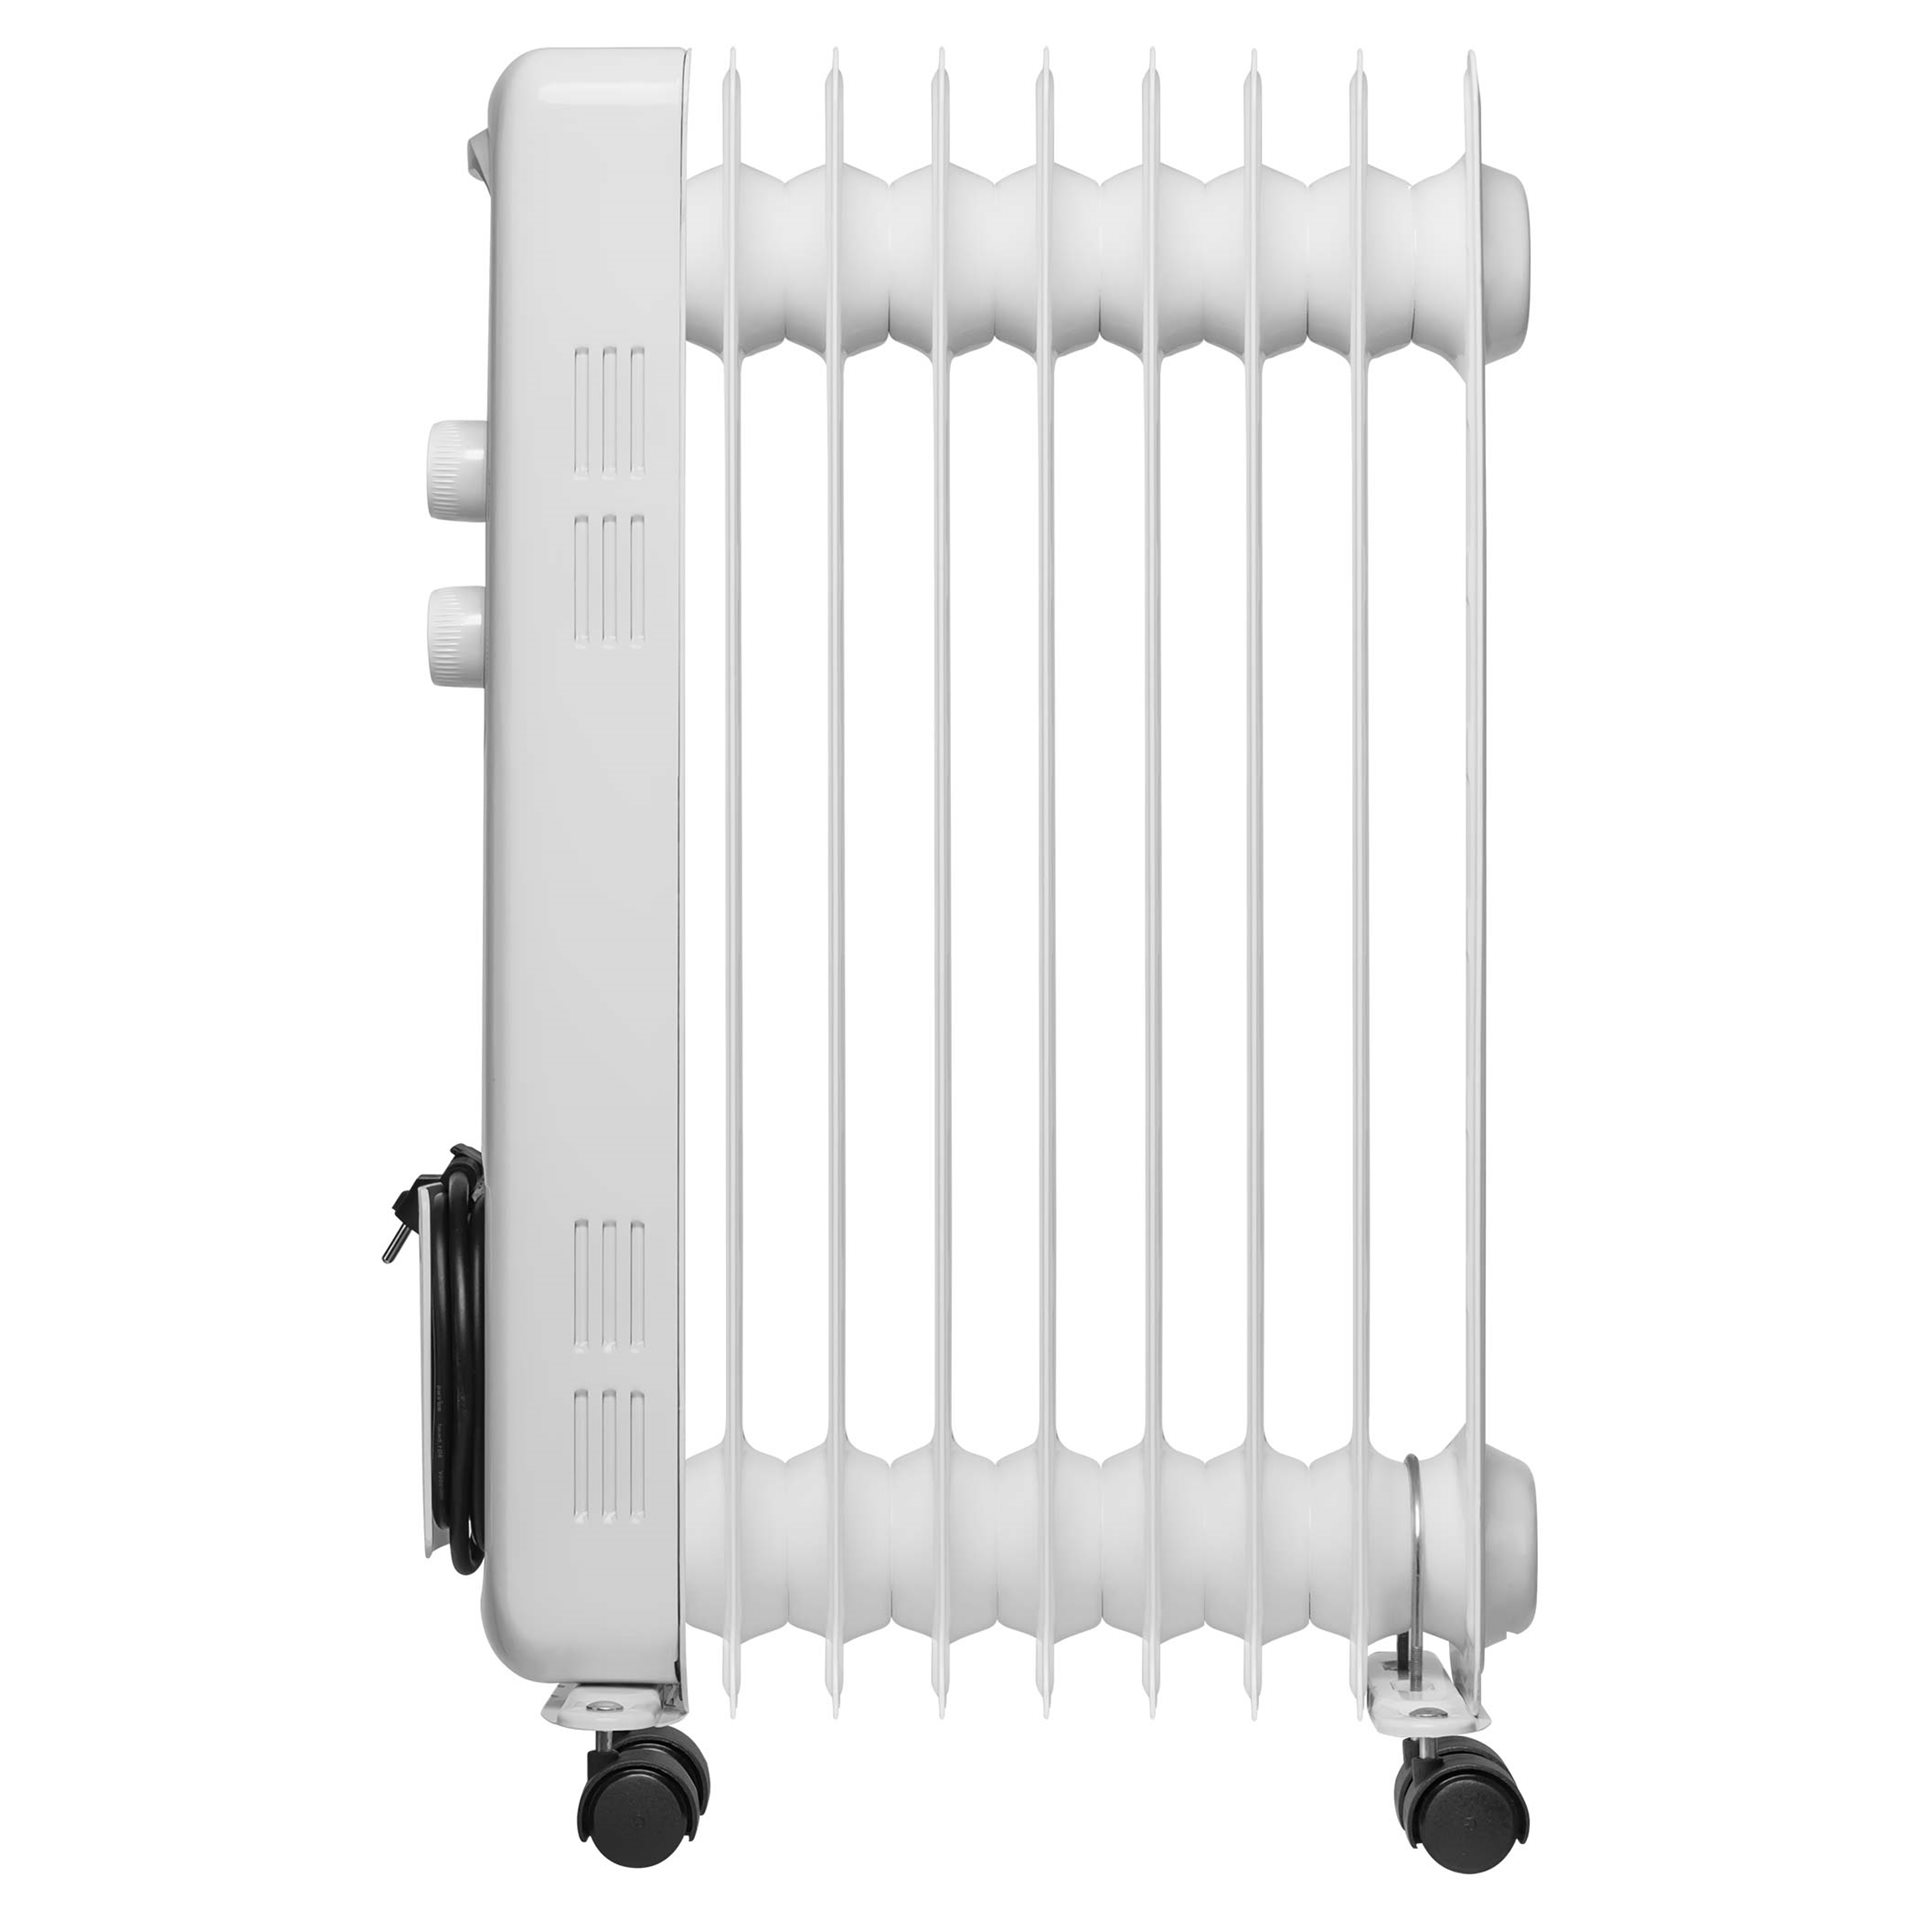 V radiátoru Sencor SOH 3309WH se nachází 9 topných článků s maximálním příkonem až 2000 W